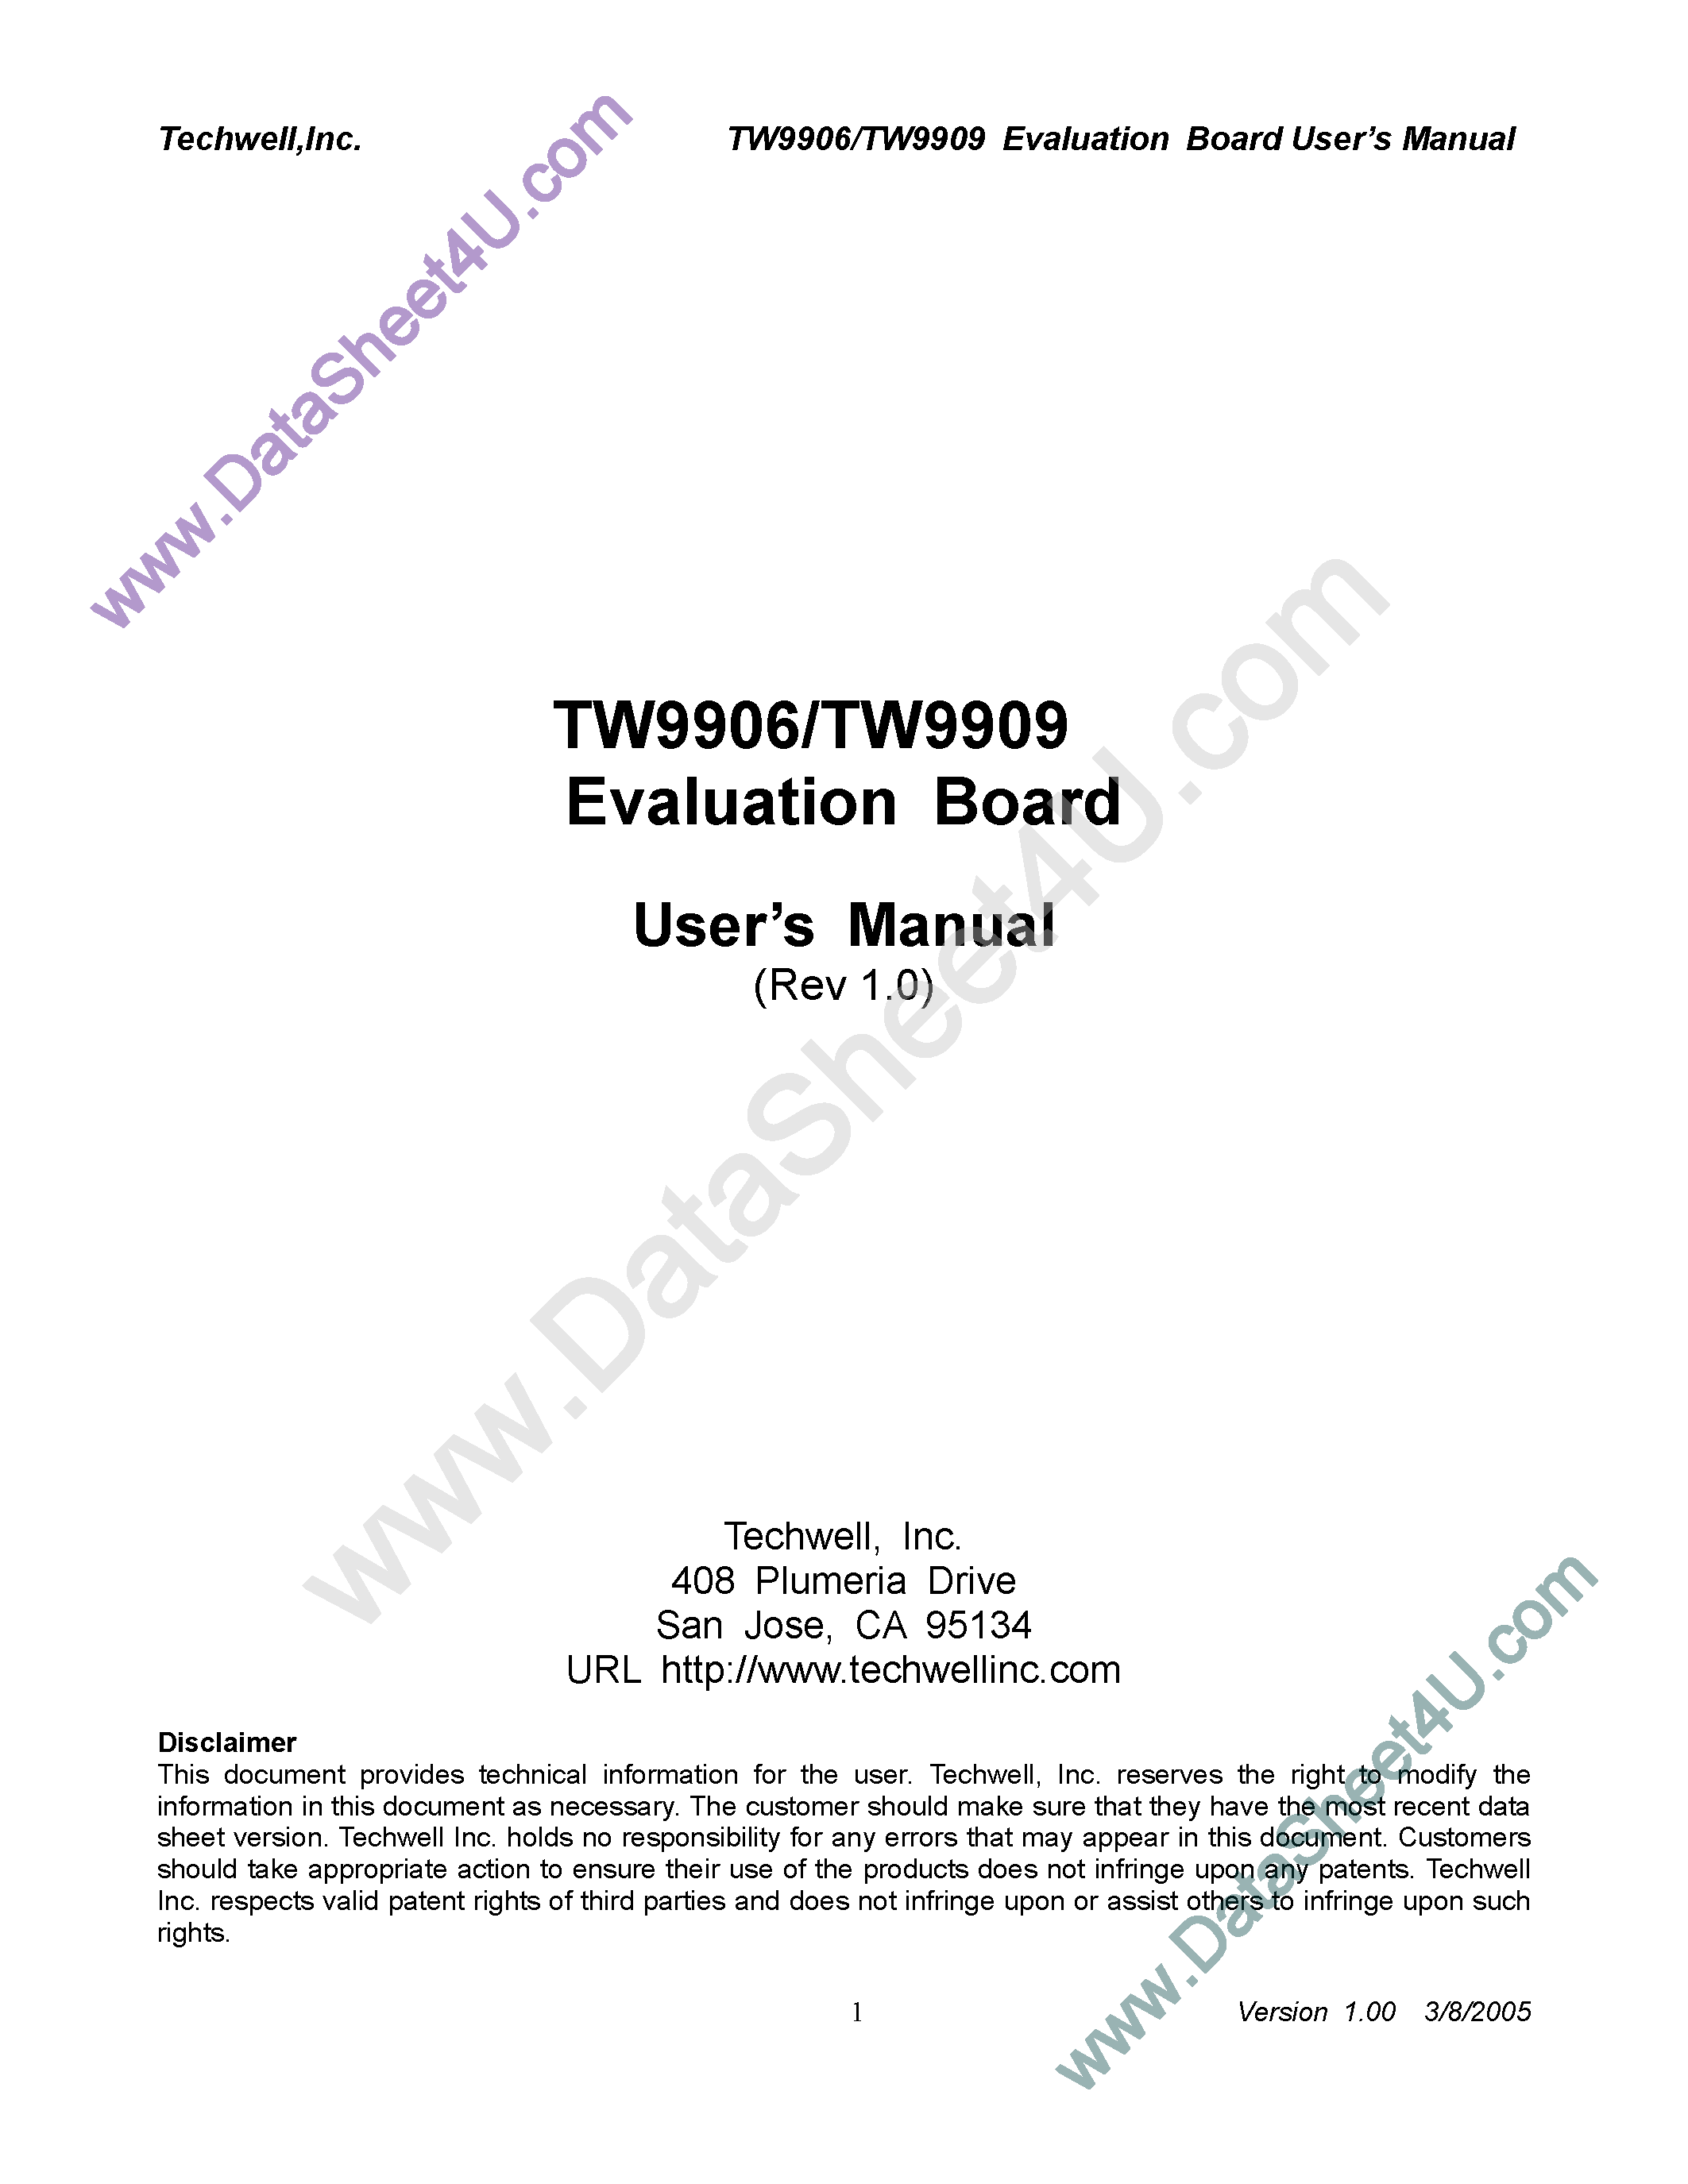 Даташит TW9906 - (TW9906 / TW9909) Evaluation Board страница 1